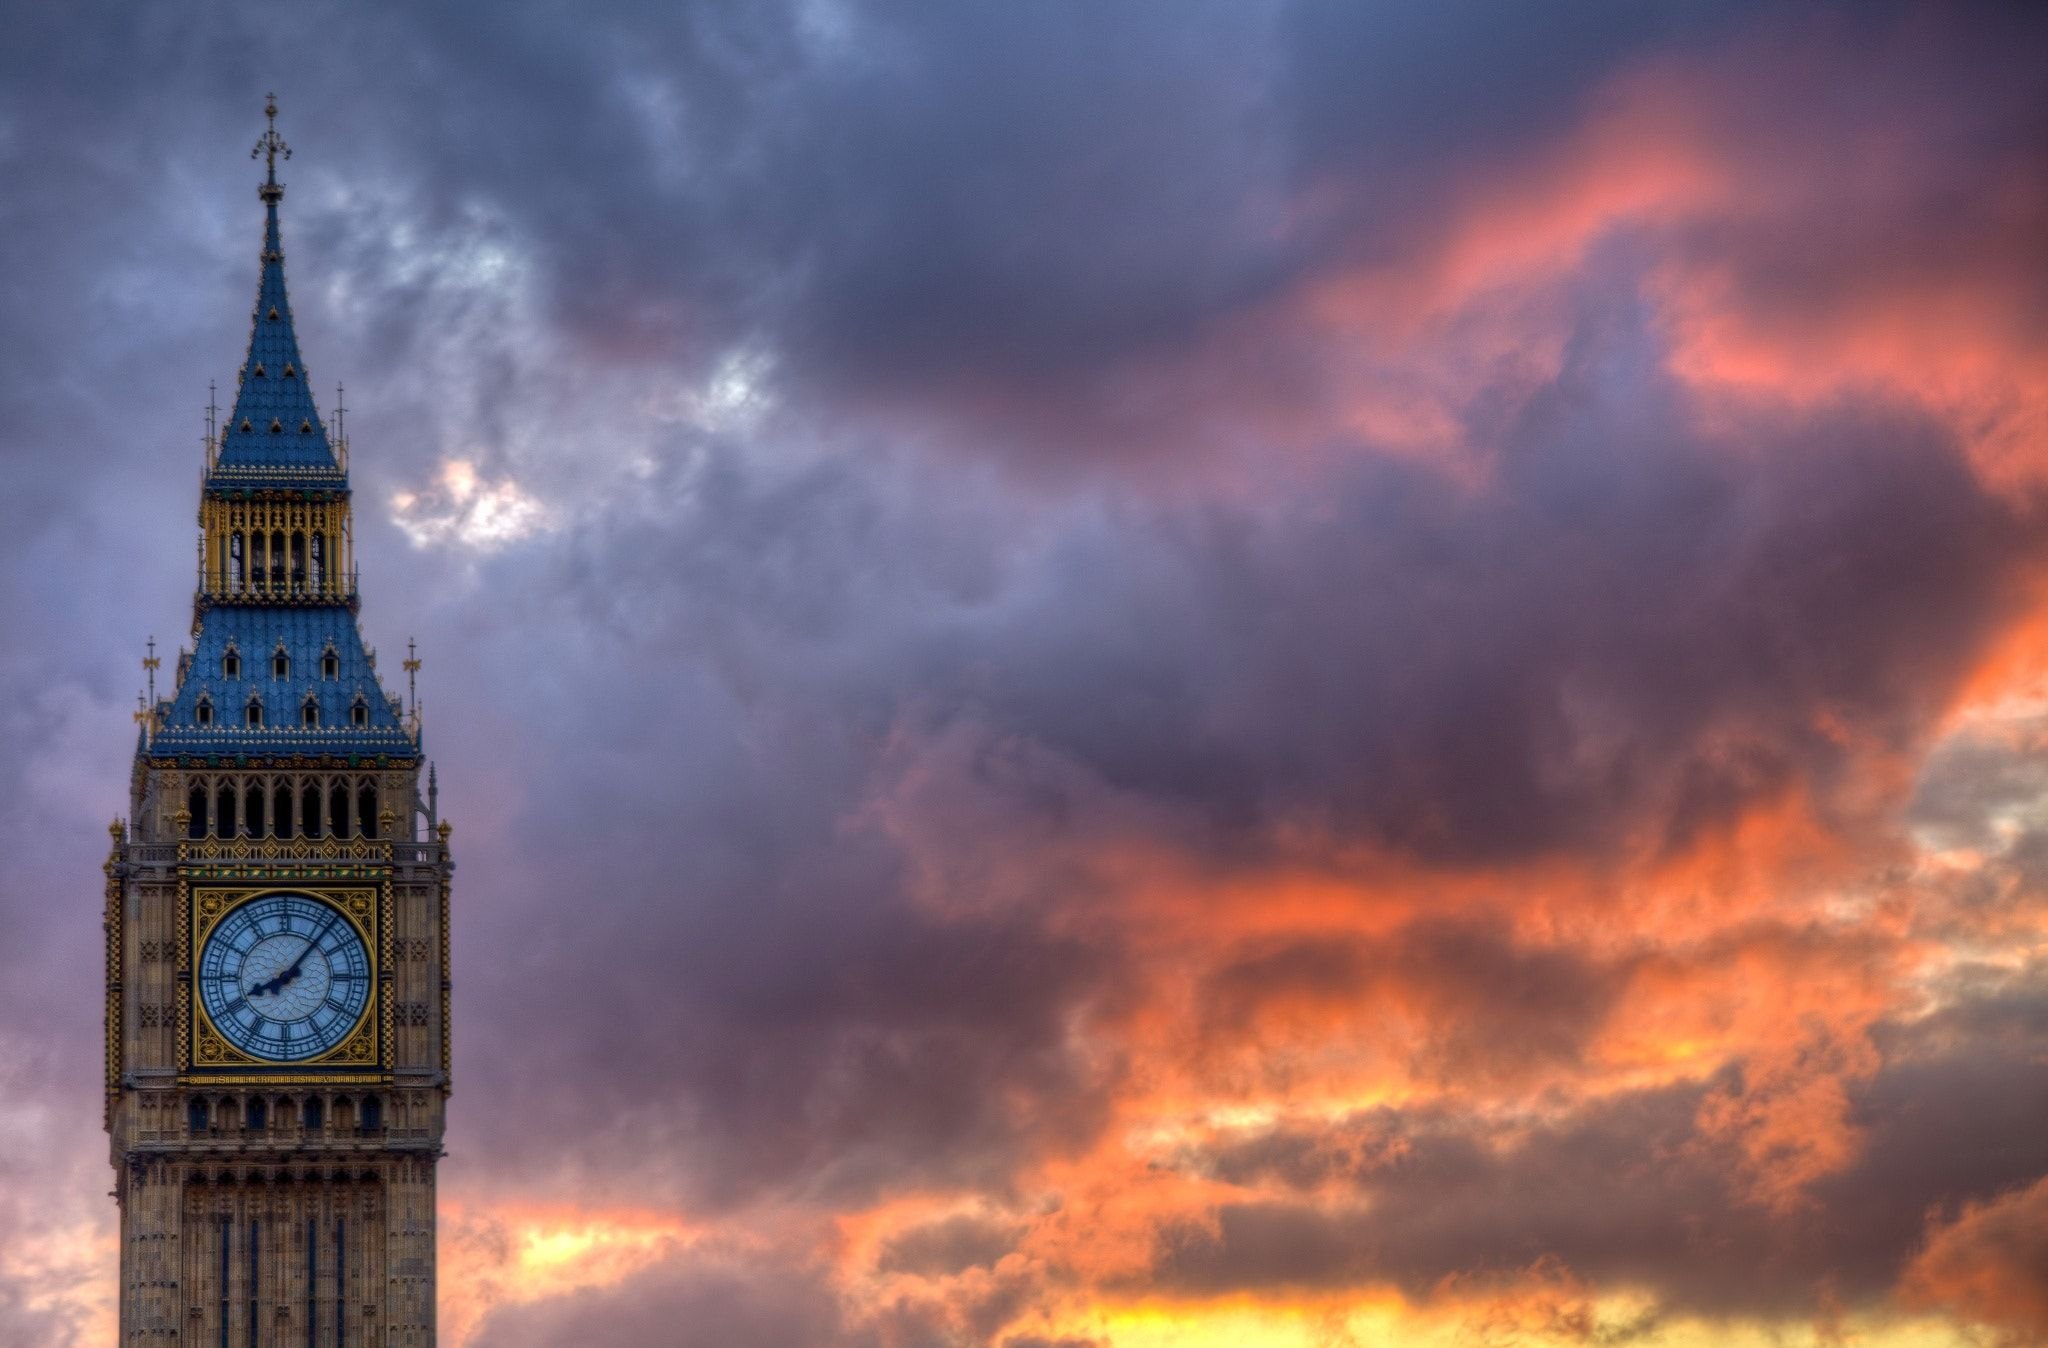 Биг бен что это. Башня Биг Бен в Лондоне. Биг-Бен (башня Елизаветы). Вестминстерский дворец с башней Биг Бен. Часы Биг Бен в Лондоне.